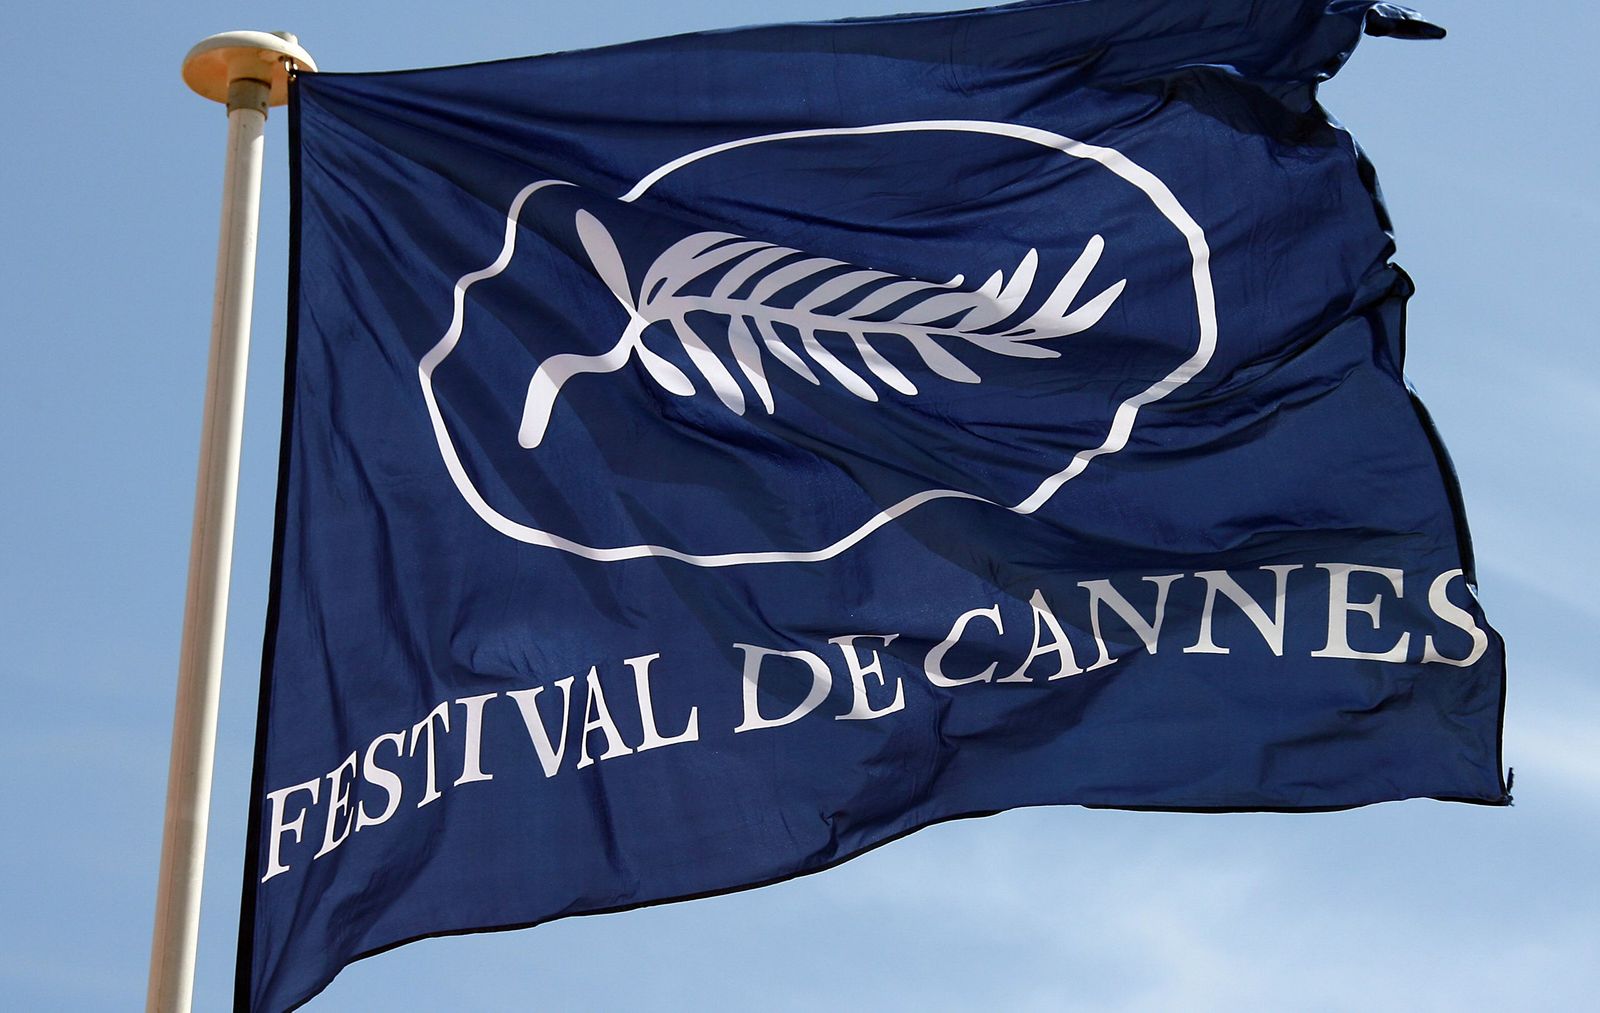 Dates for the 2018 Festival de Cannes - Festival de Cannes